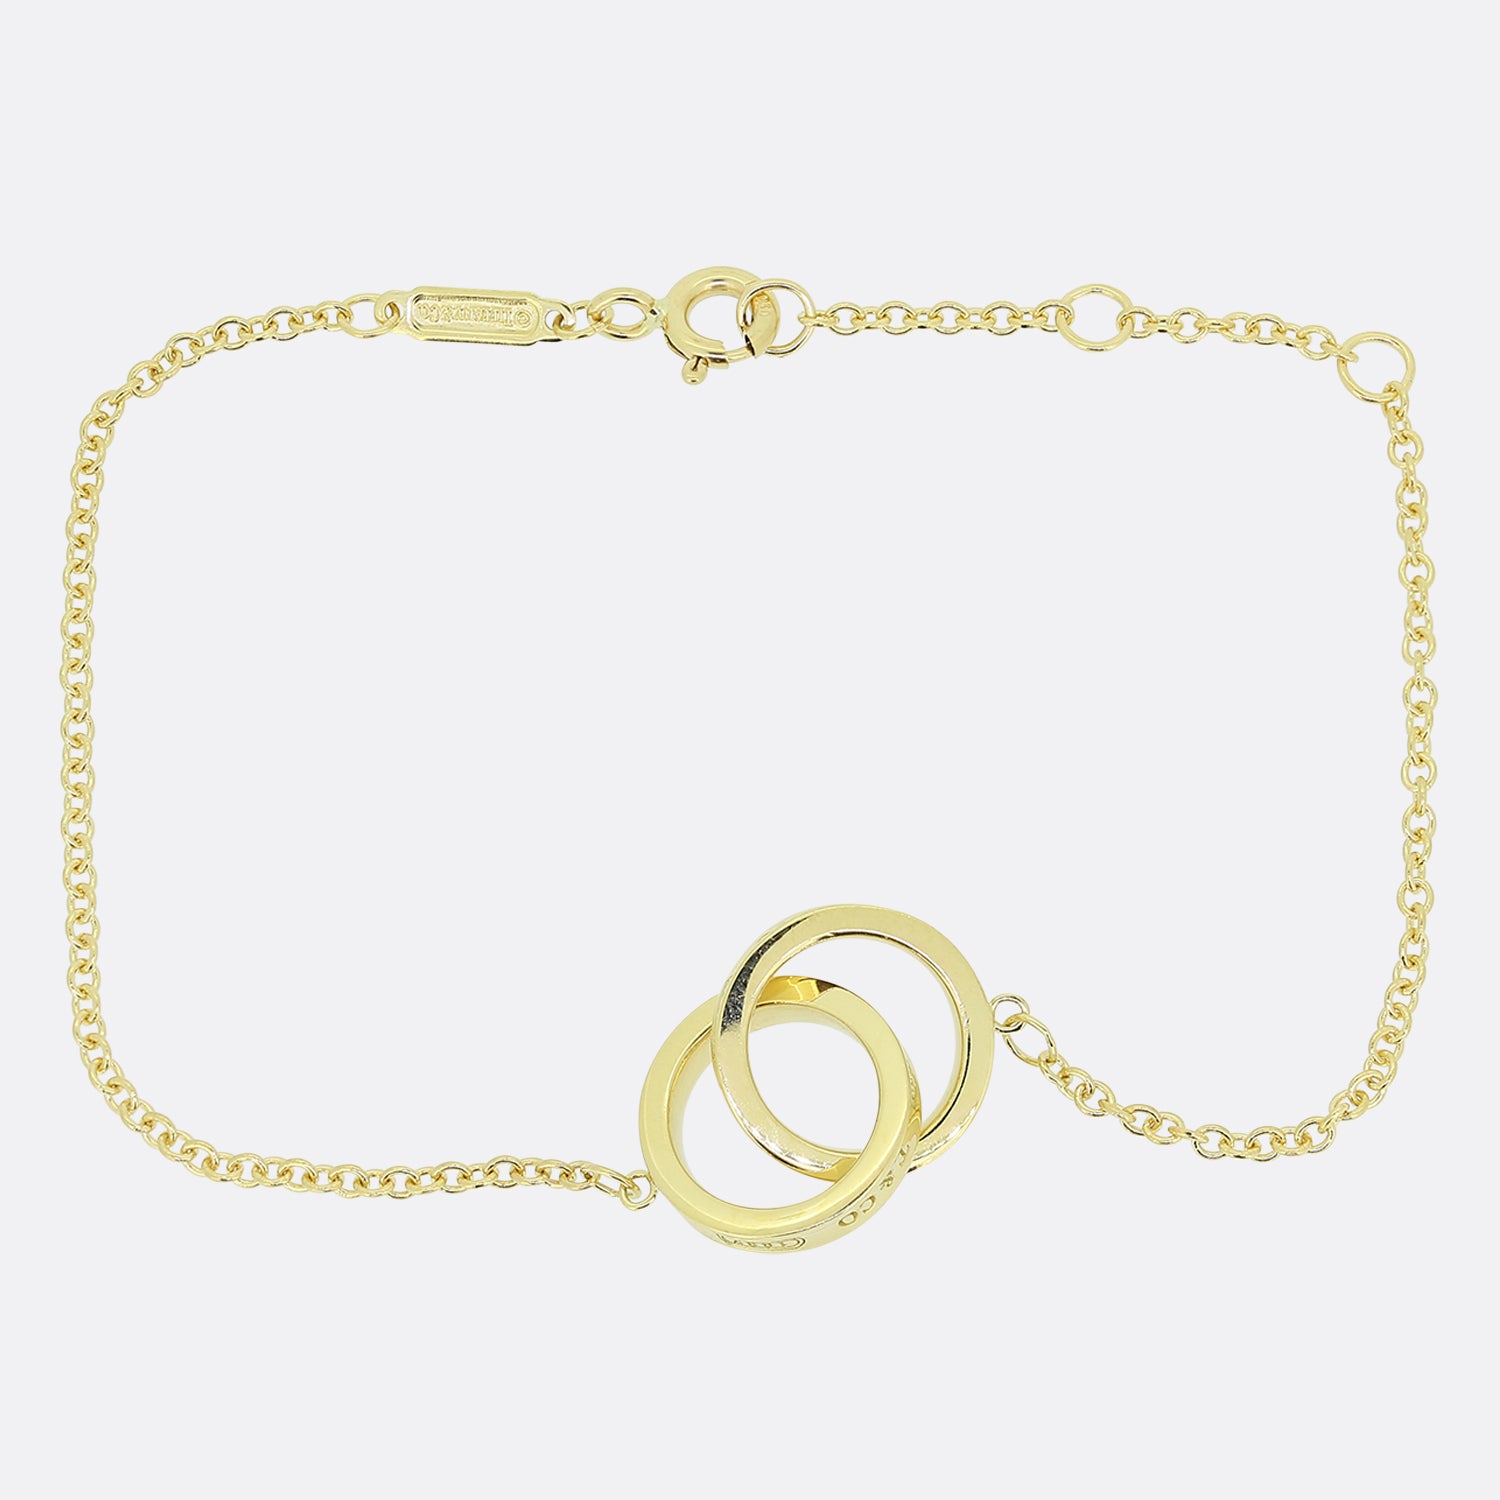 Tiffany & Co Interlocking Bangle Bracelet 18k Yellow Gold 7.25